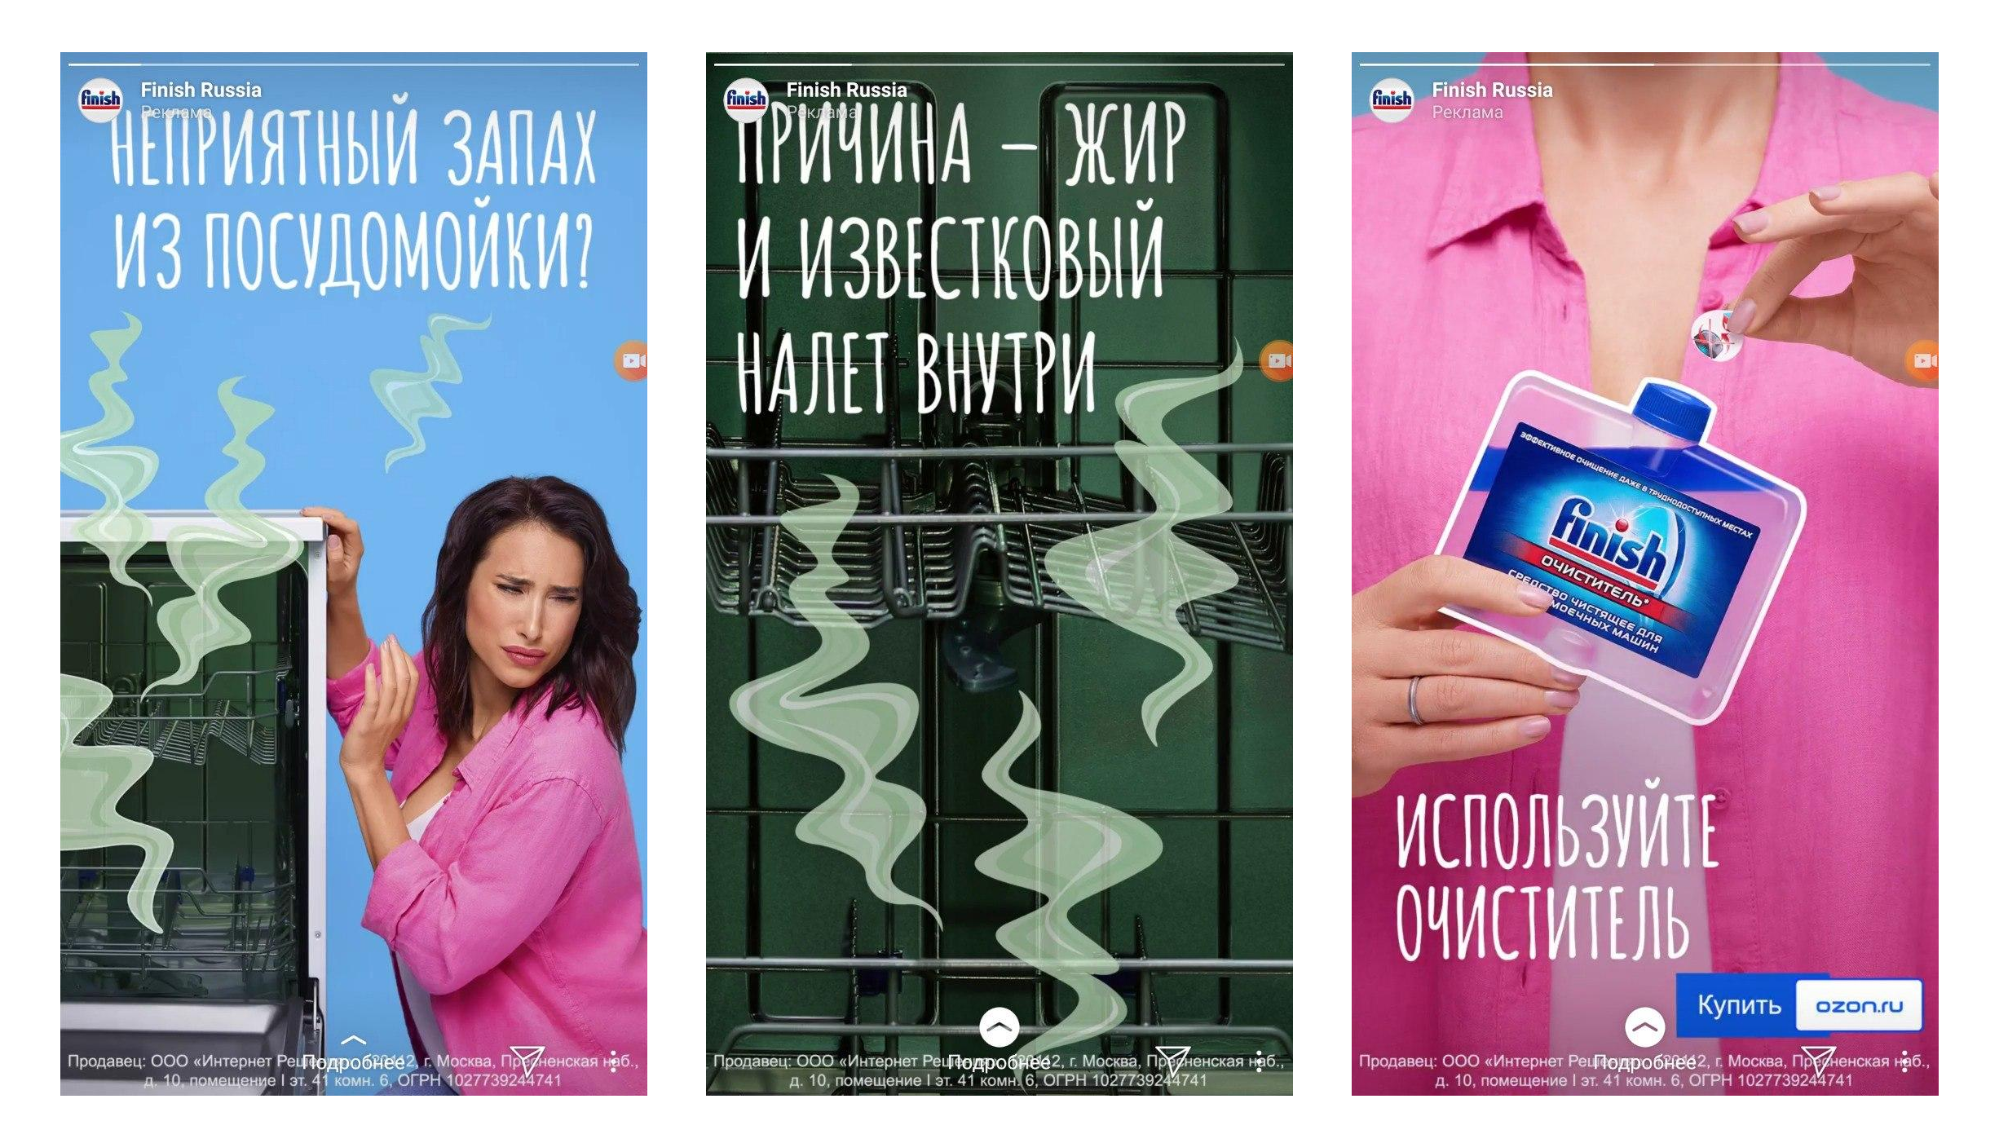 Пример рекламы в Stories Instagram формата "Кольцевая галерея"